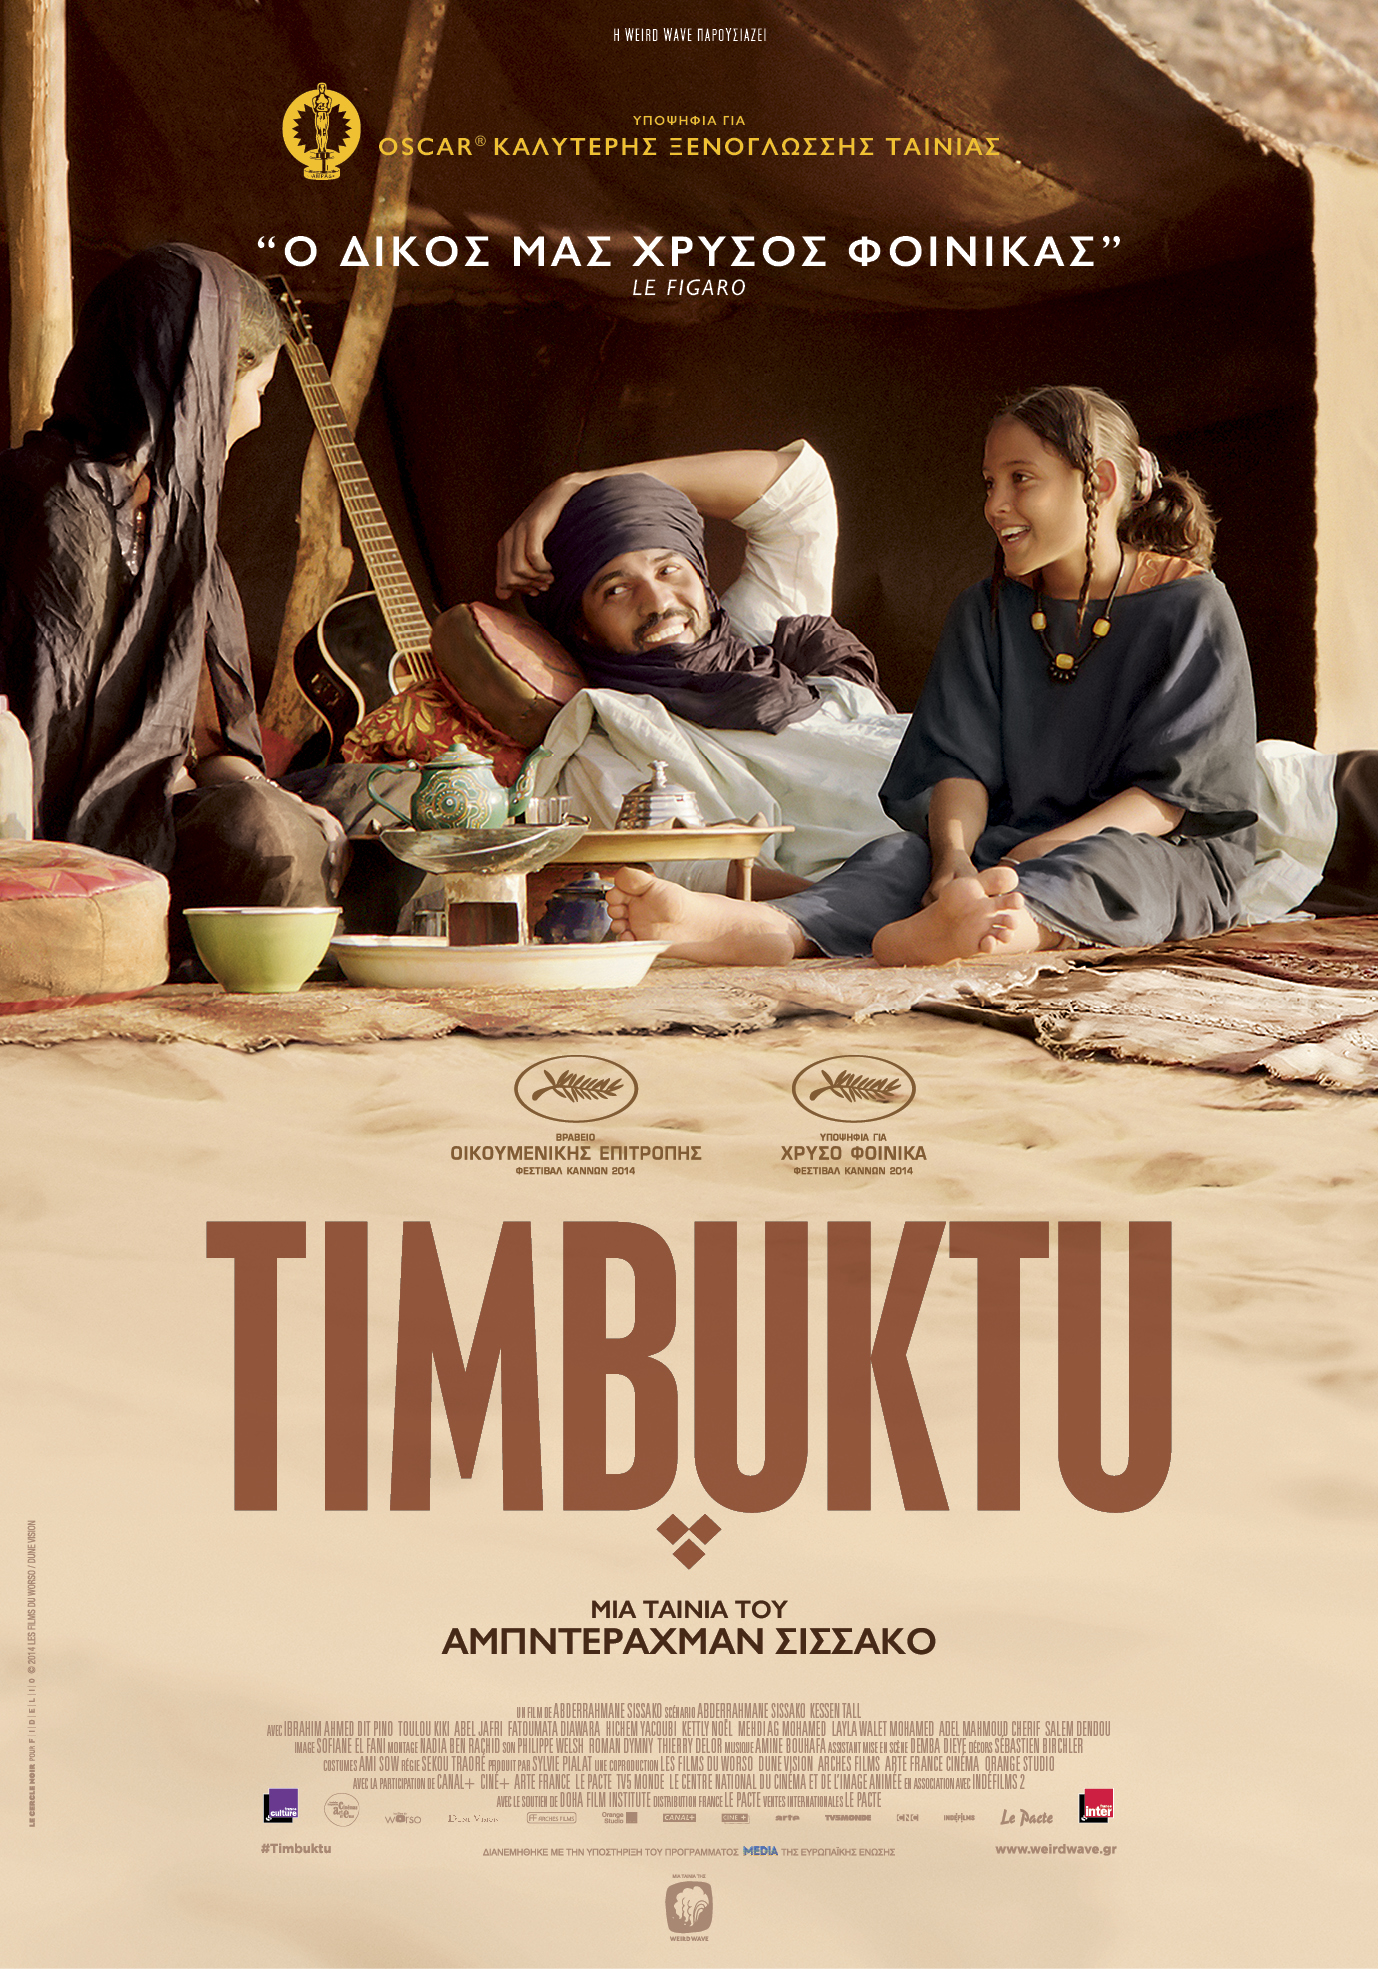 ΚΙΛΕΚΩ 24 11 Timbuktu